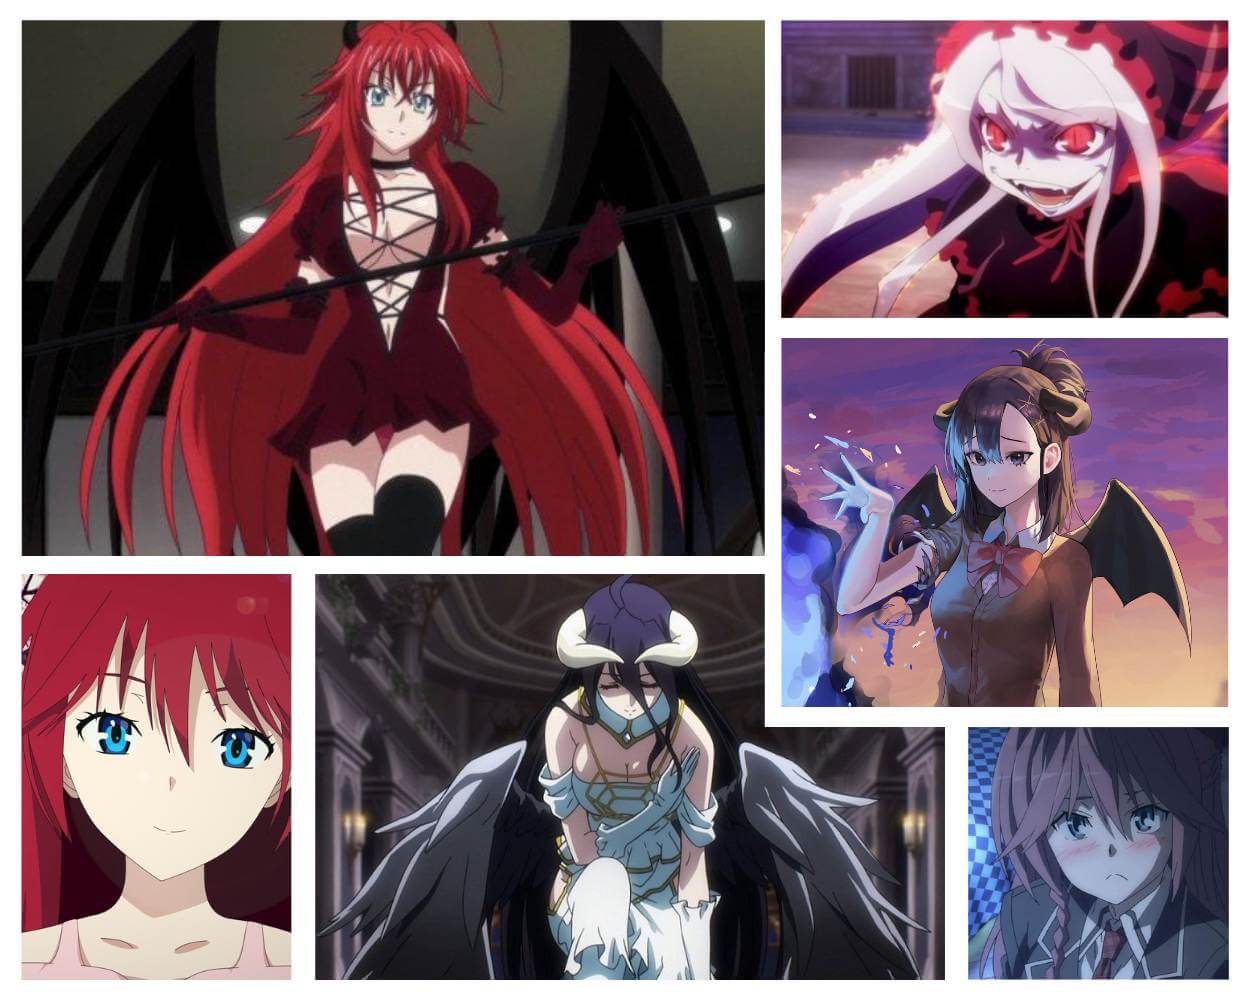 15 Best Anime With An Evil/Villain Main Character – FandomSpot